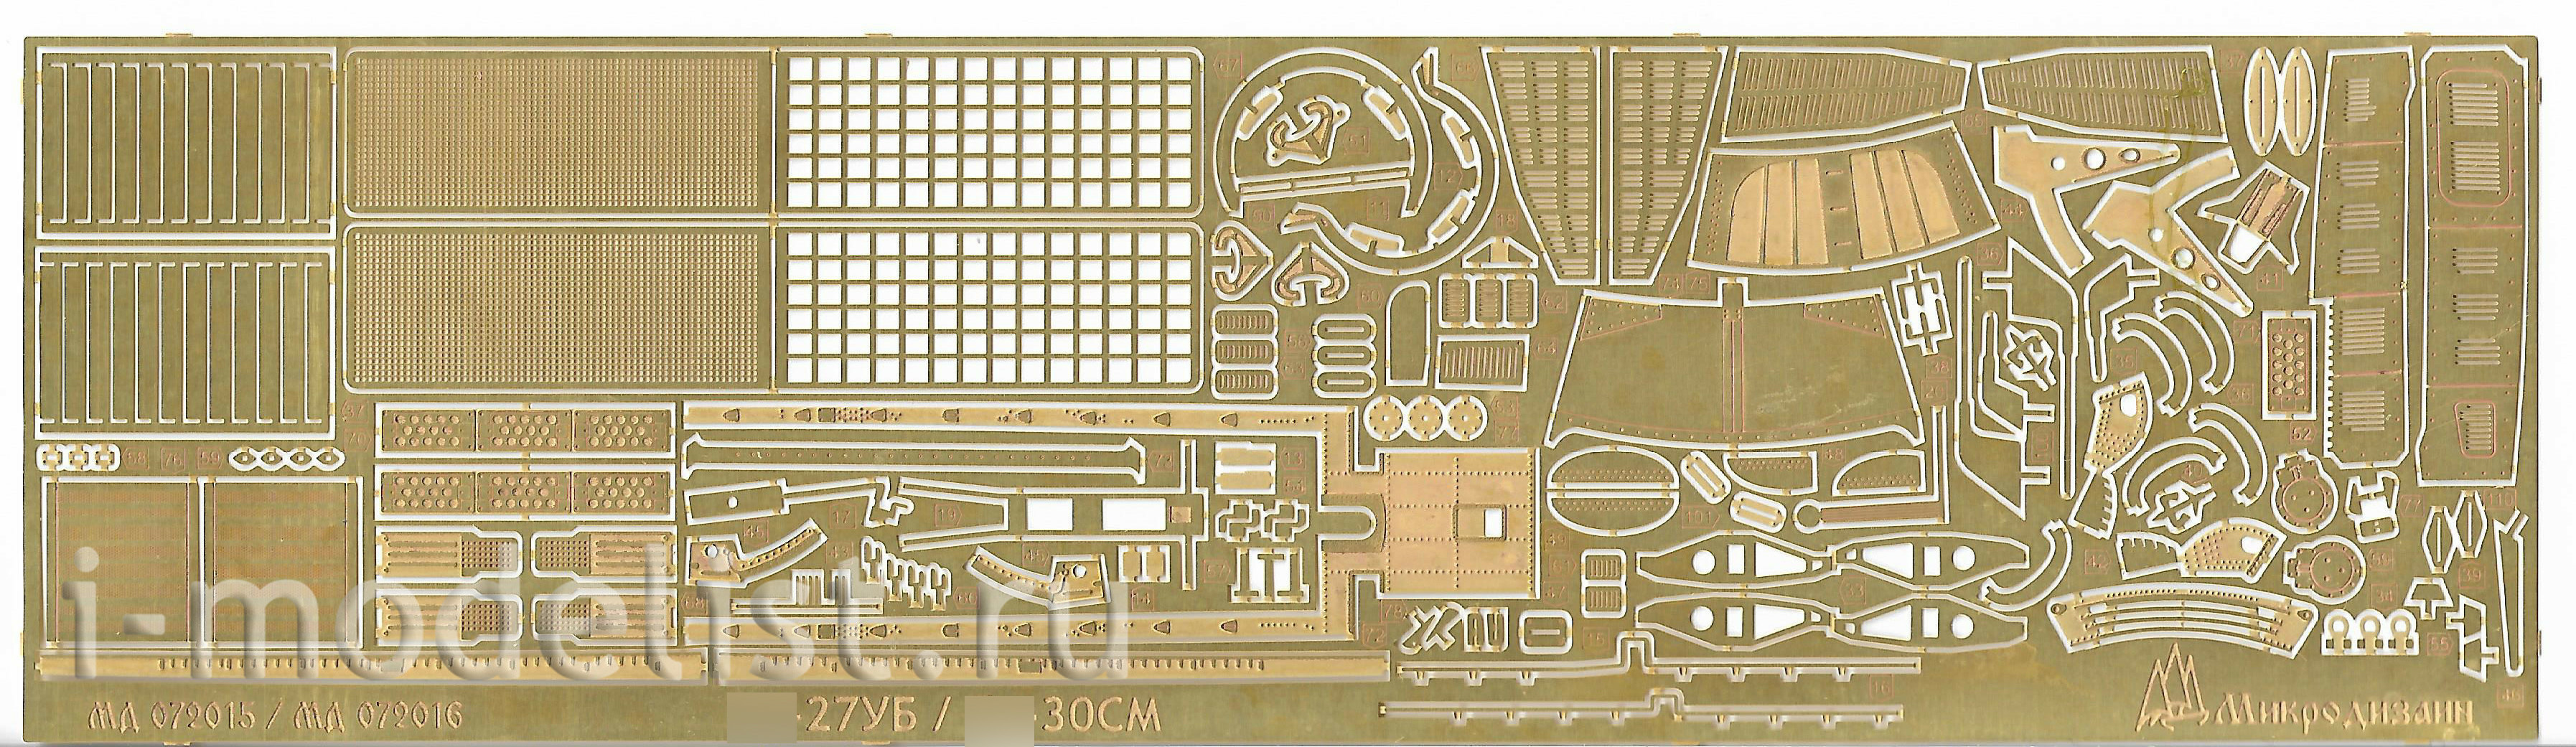 072015 Microdesign 1/72 Photo Etching Kit Sukhoy-27UB (Zvezda) color dashboards